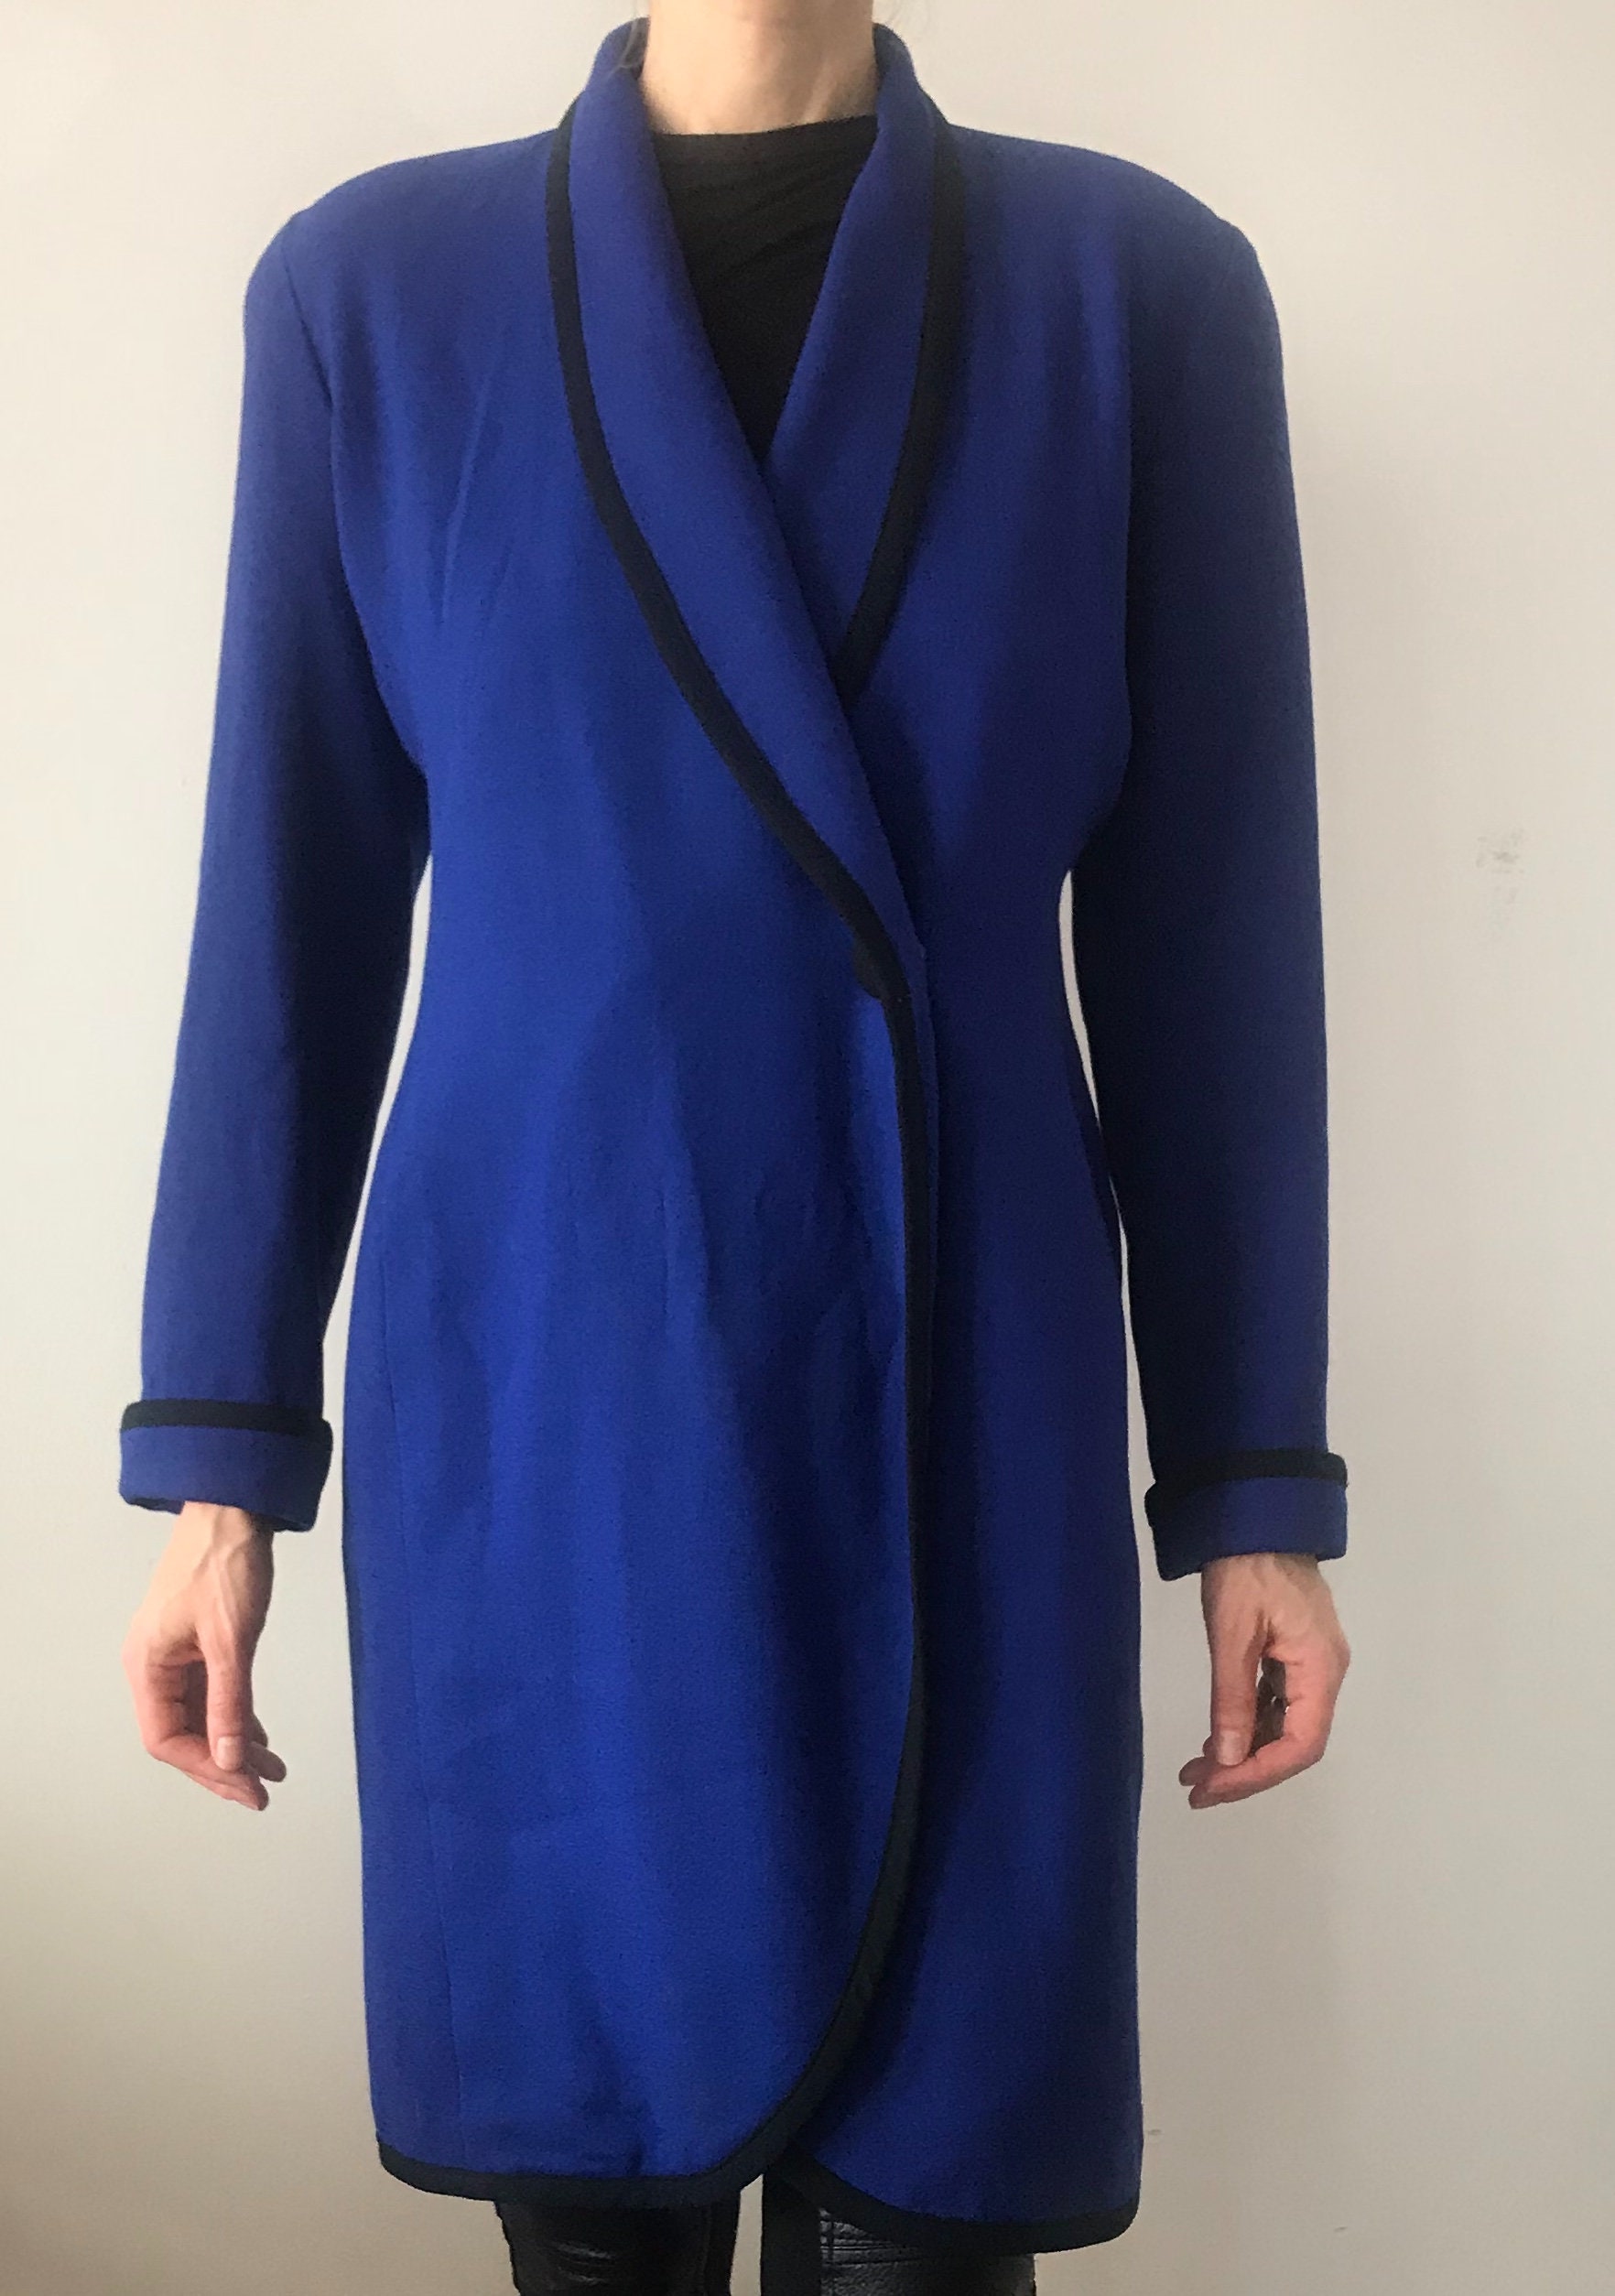 Azure Blue Slim Coat Vintage Ann Taylor | Etsy